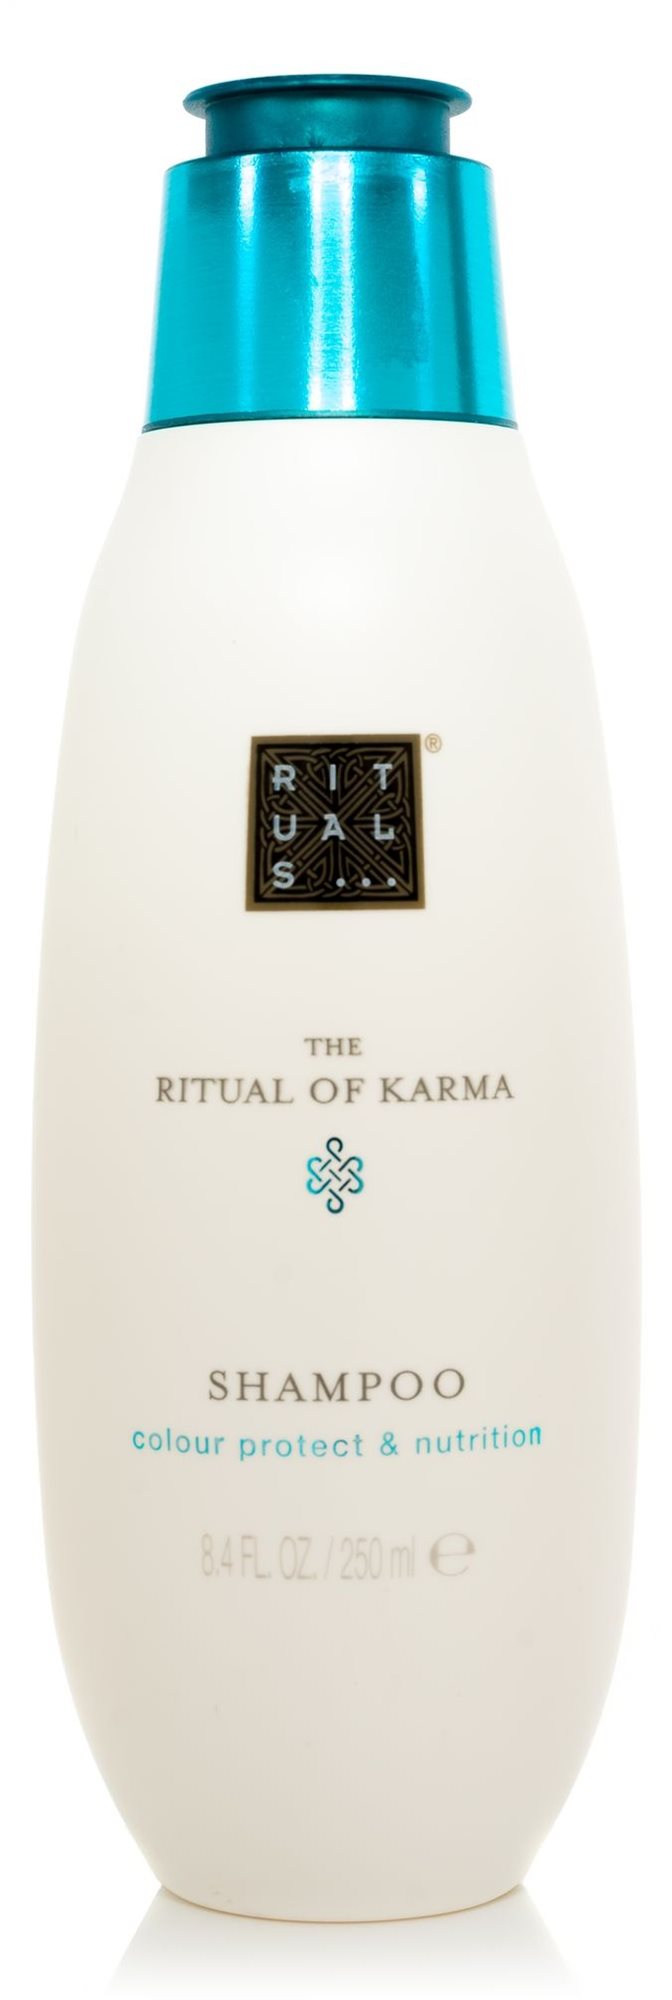 RITUALS The Ritual of Karma Shampoo 250 ml